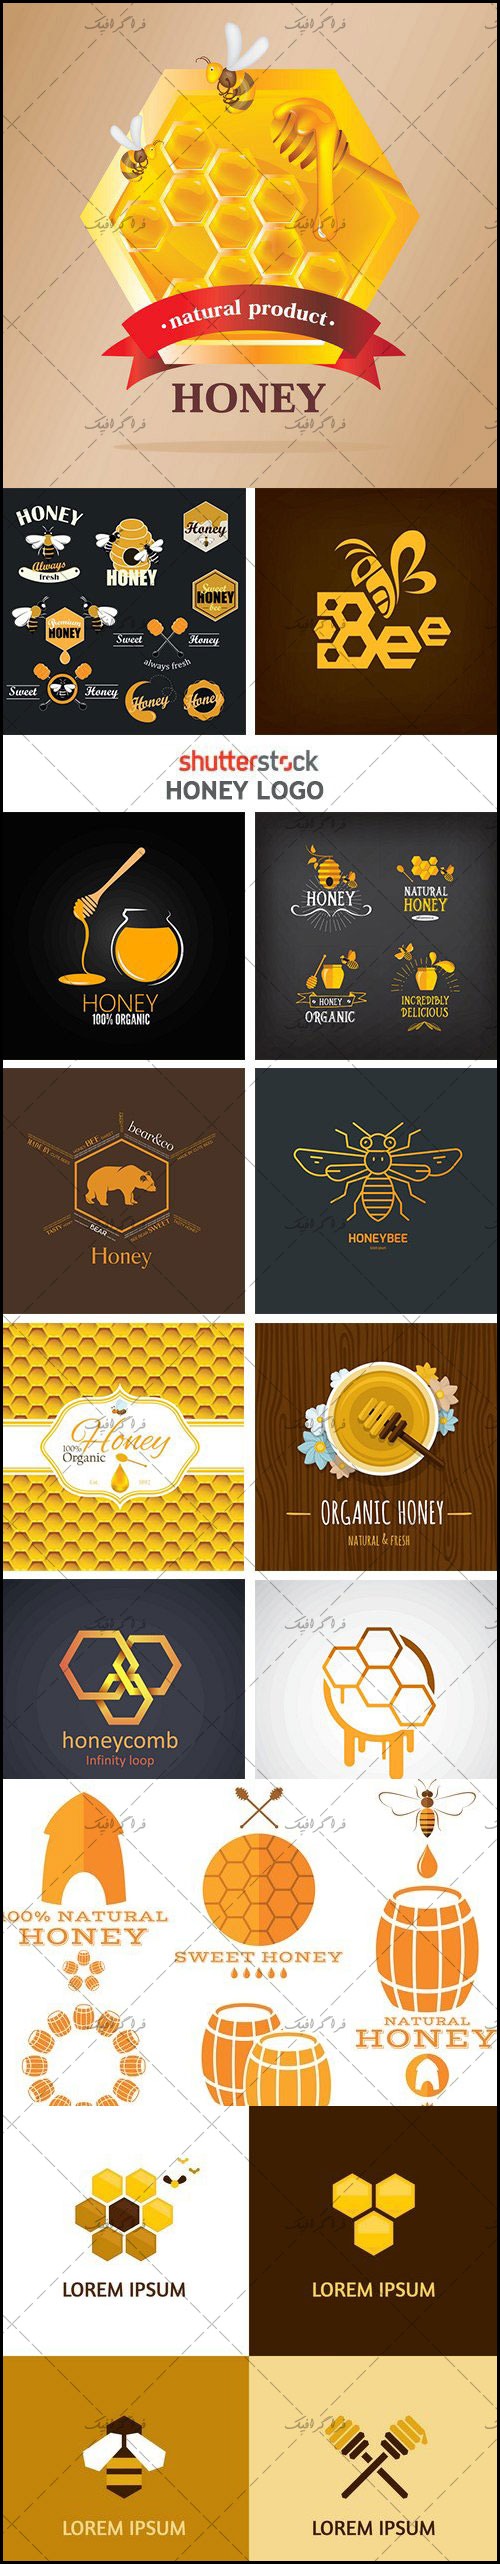 دانلود لوگو های عسل و زنبور